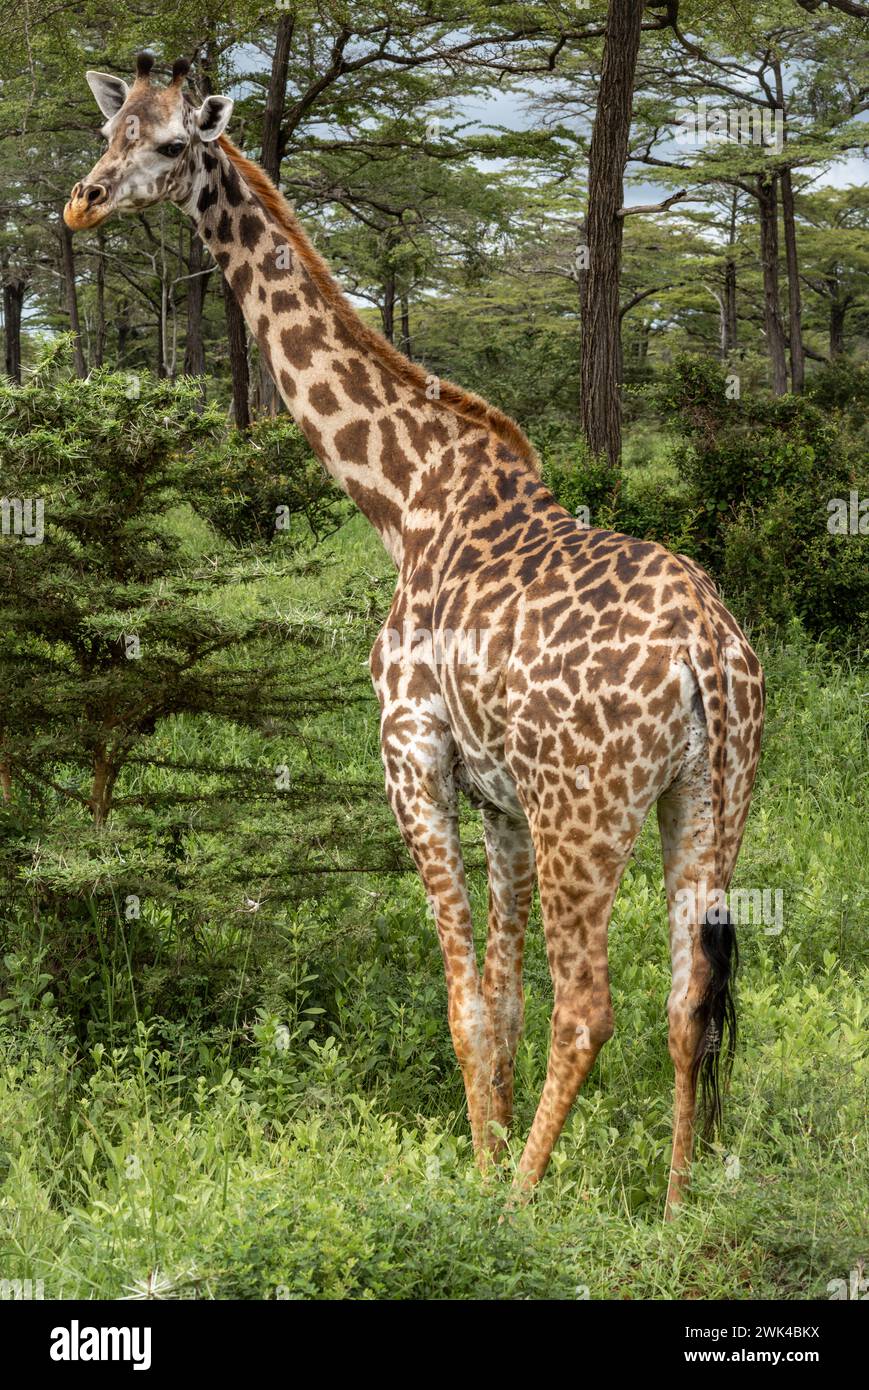 Une girafe Masaï femelle dans le parc national de Nyerere (réserve de gibier de Selous) dans le sud de la Tanzanie. La girafe Masaï est répertoriée comme étant menacée par l'UICN. Banque D'Images